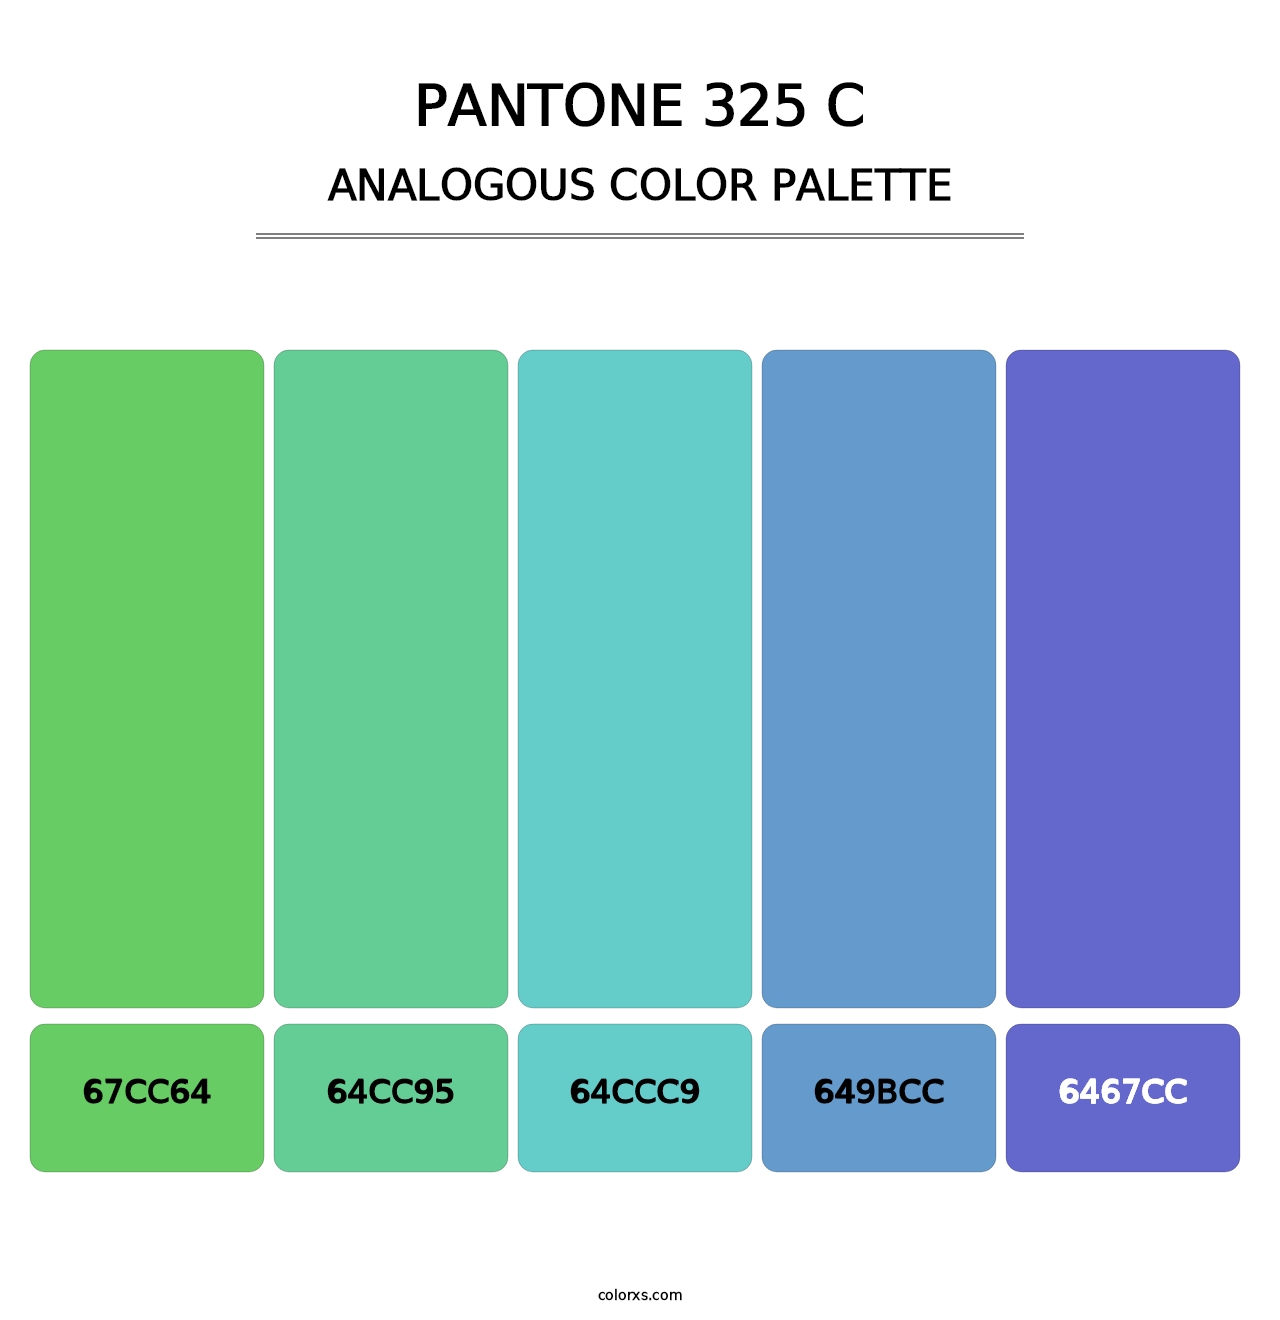 PANTONE 325 C - Analogous Color Palette